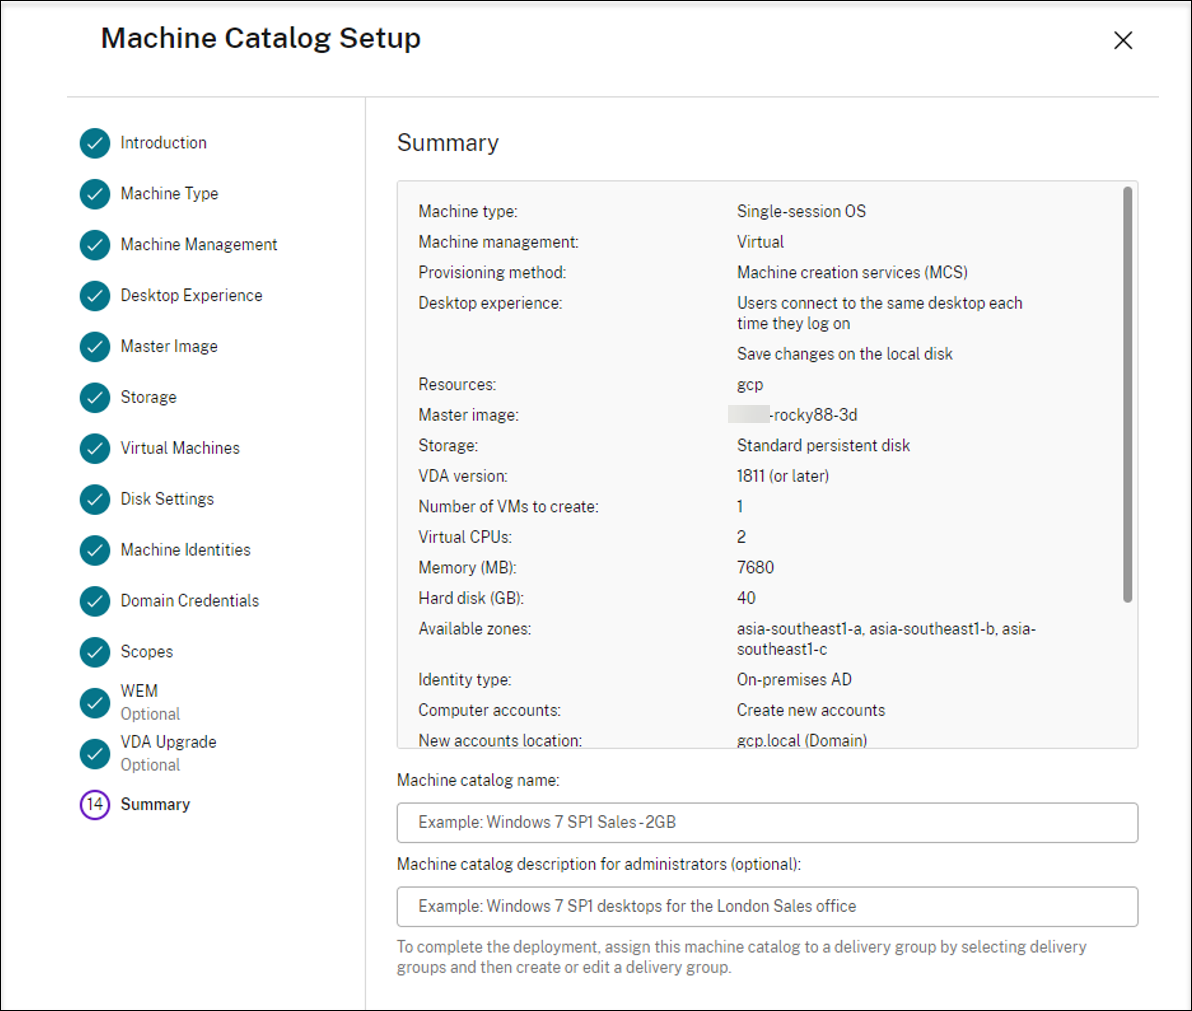 Resumen de configuración del catálogo de máquinas